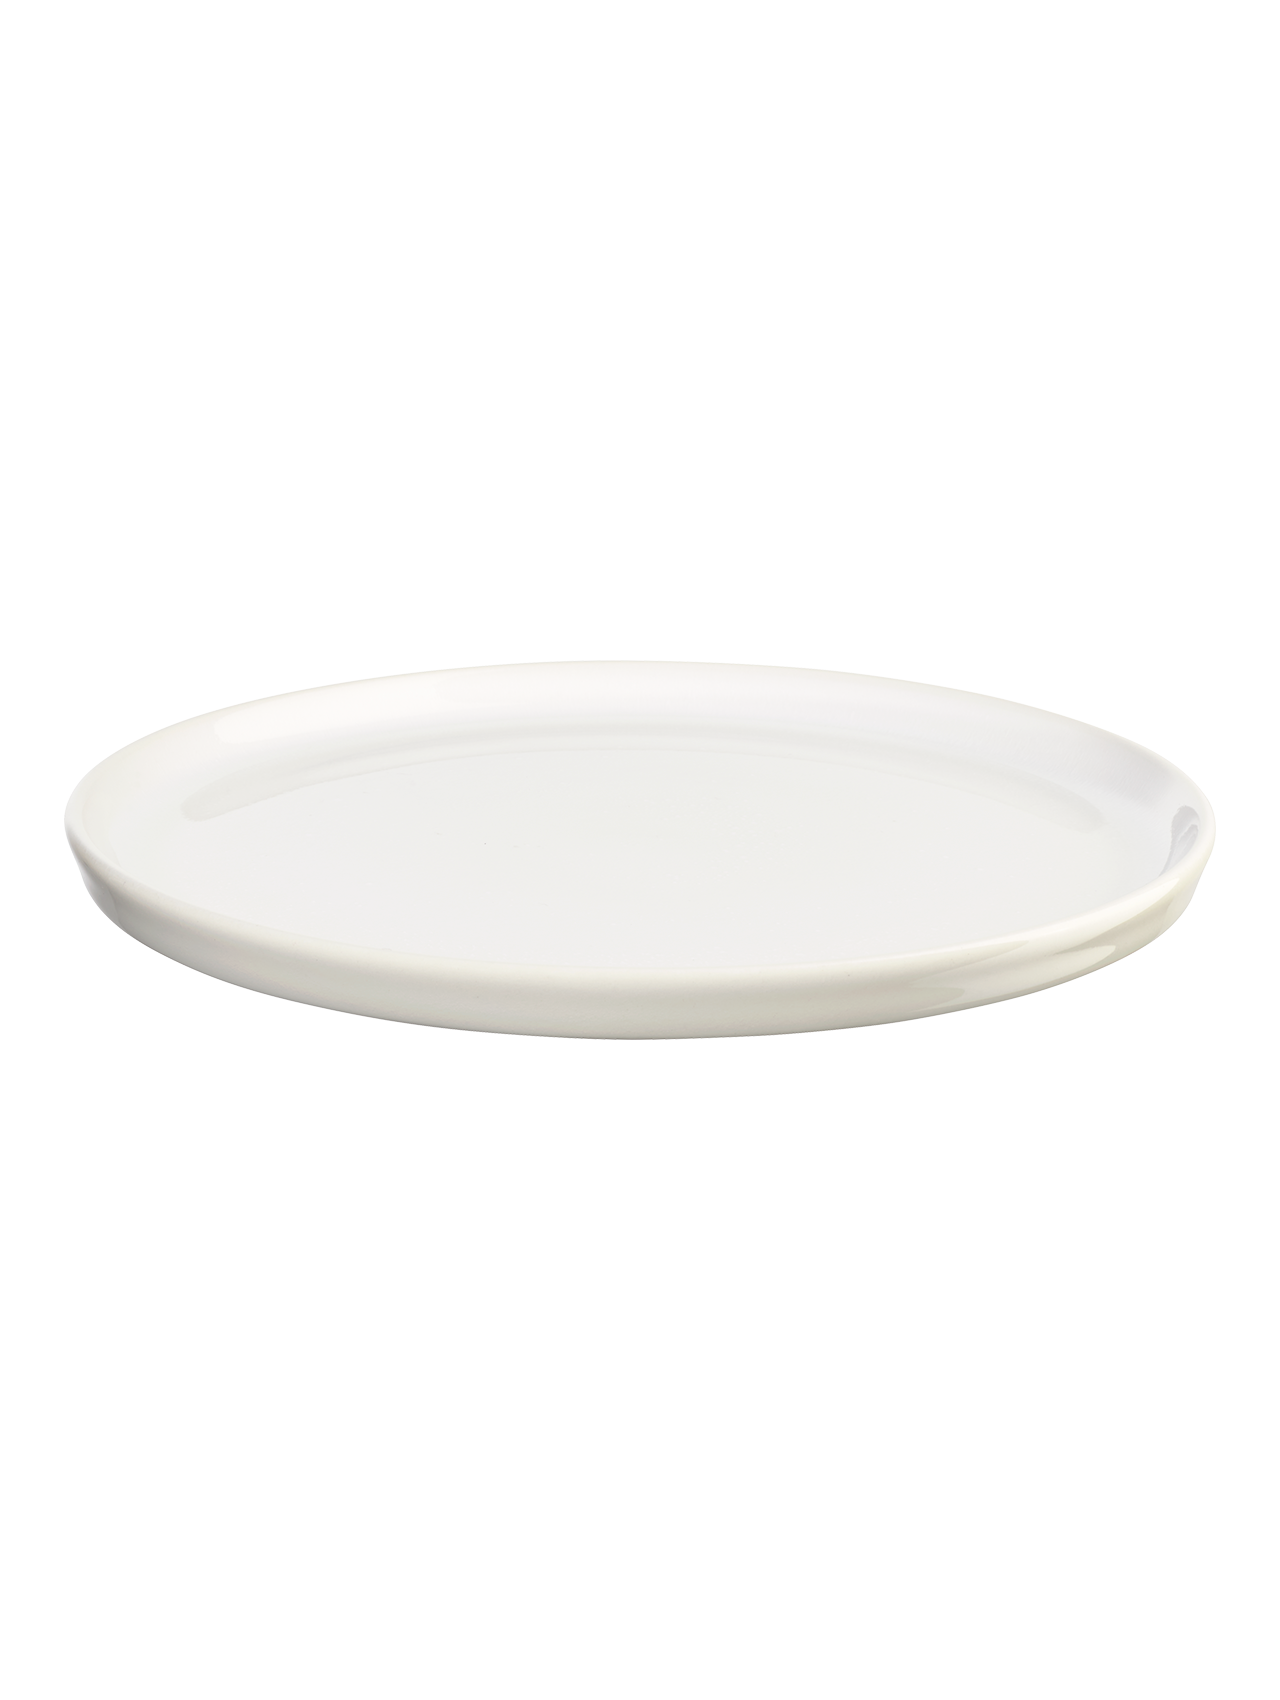 RE:GLAZE - assiette plate, tacheté de blanc